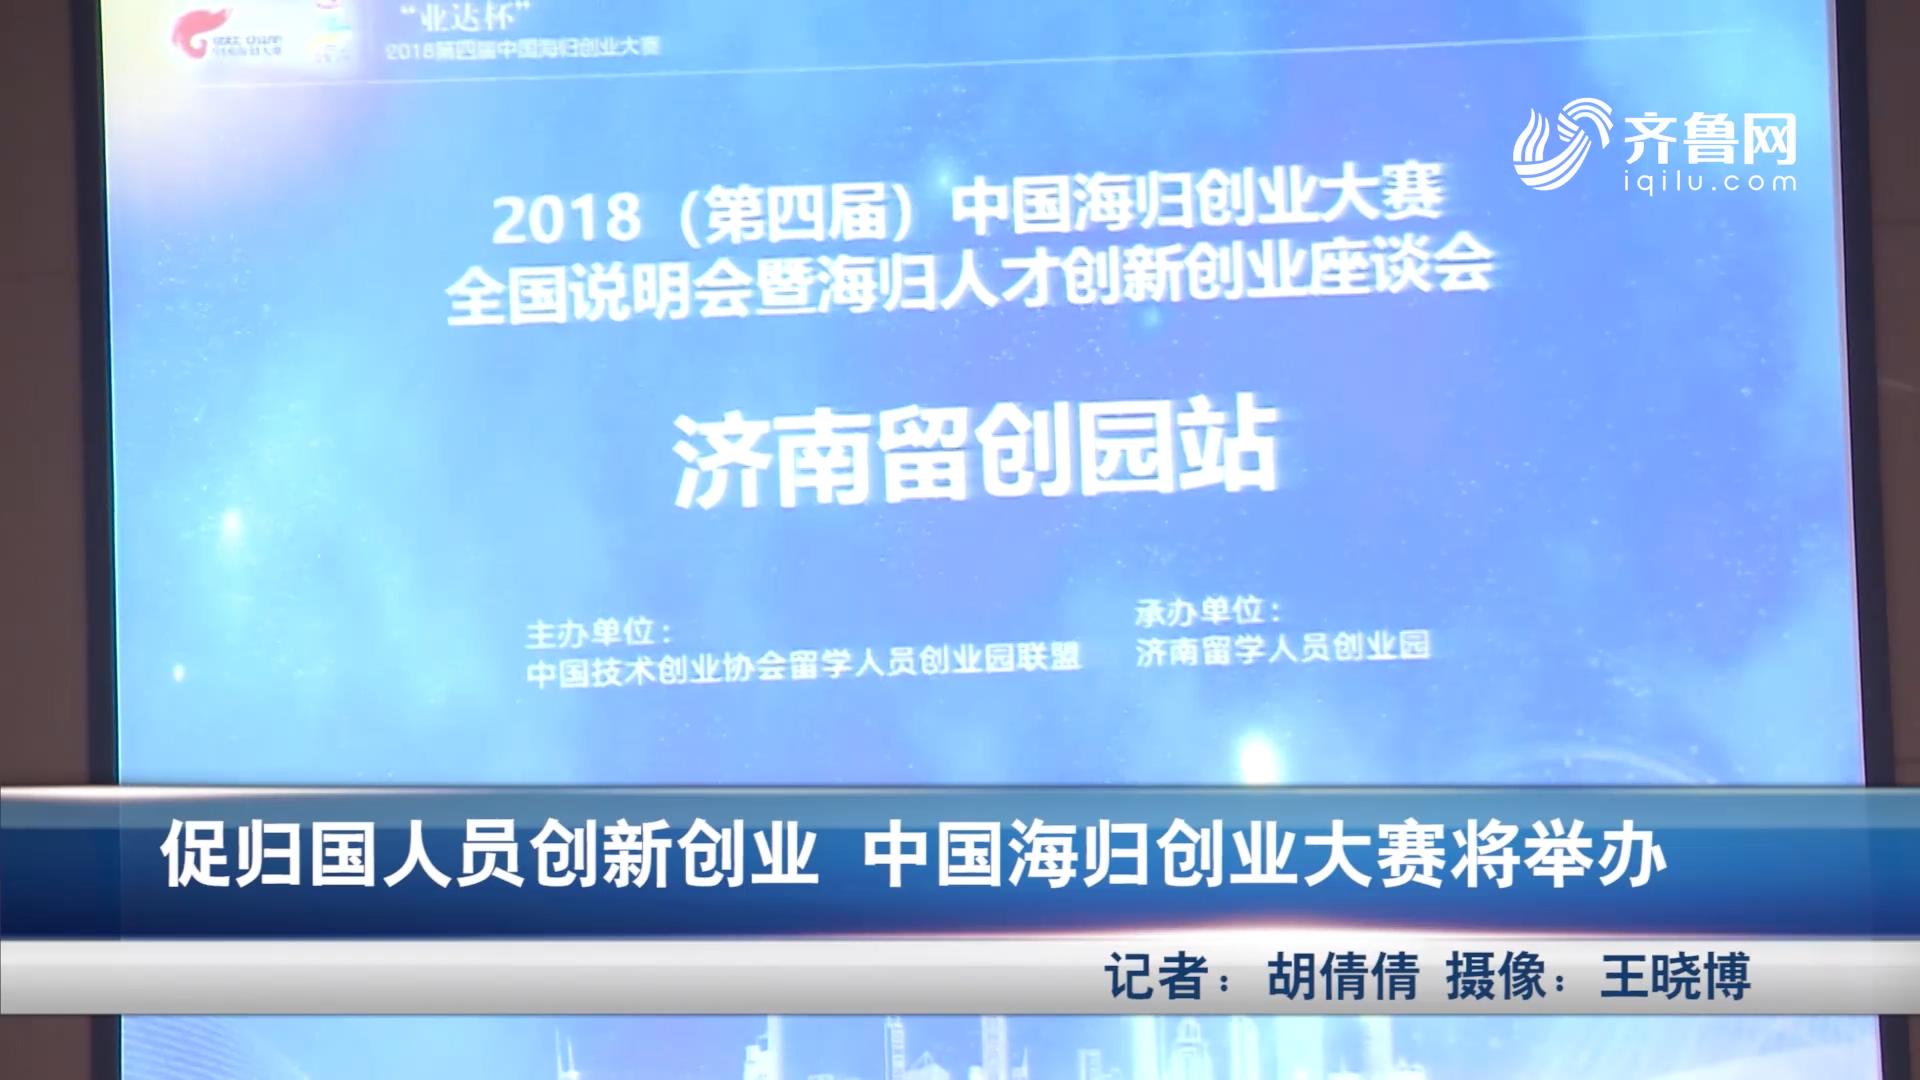 促归国人员创新创业 中国海归创业大赛将举办